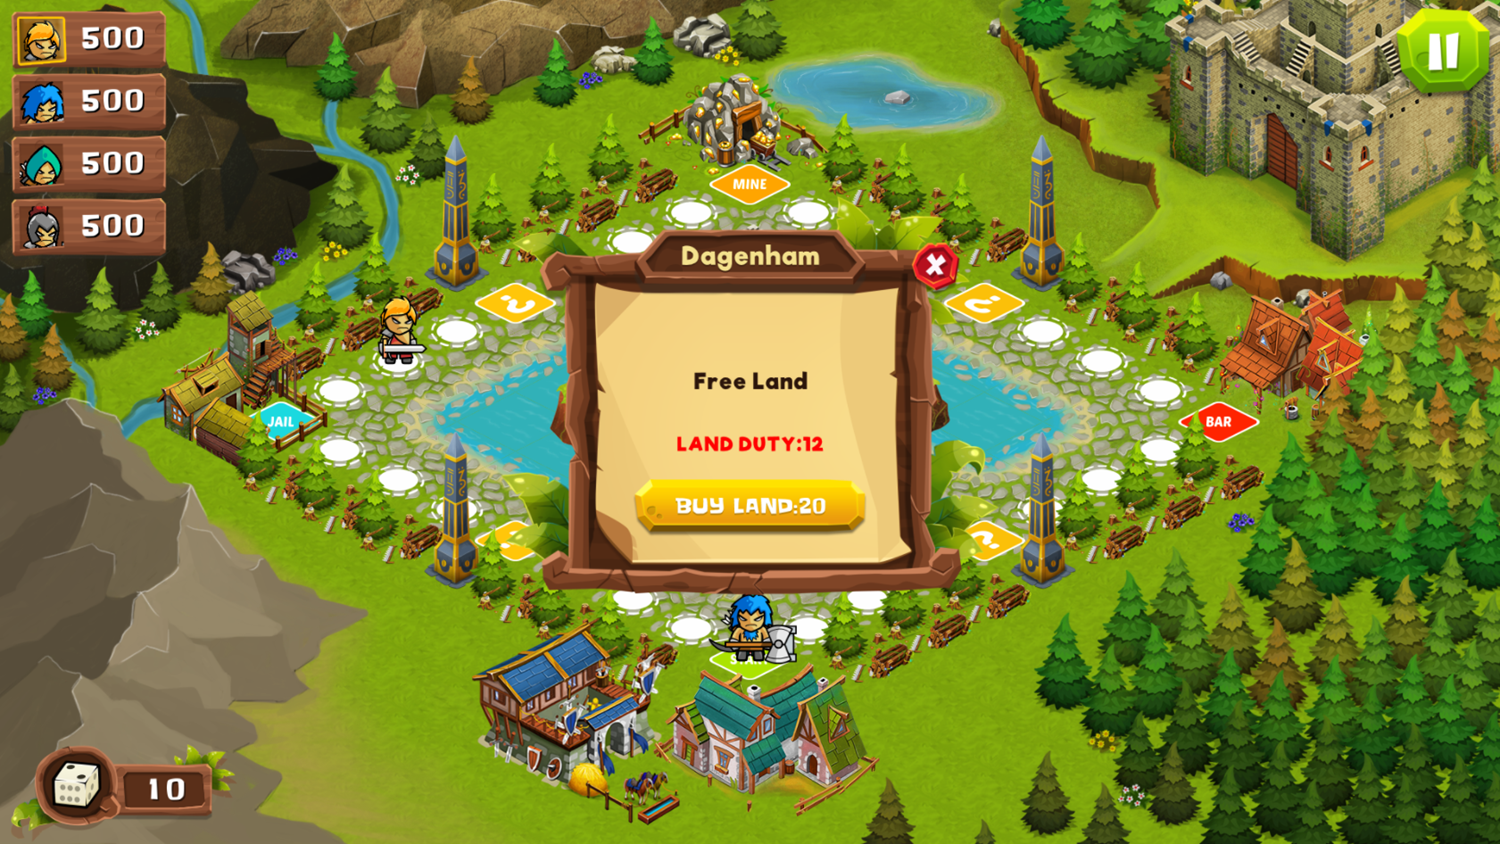 Kingdoms Wars Game Buy Land Screenshot.